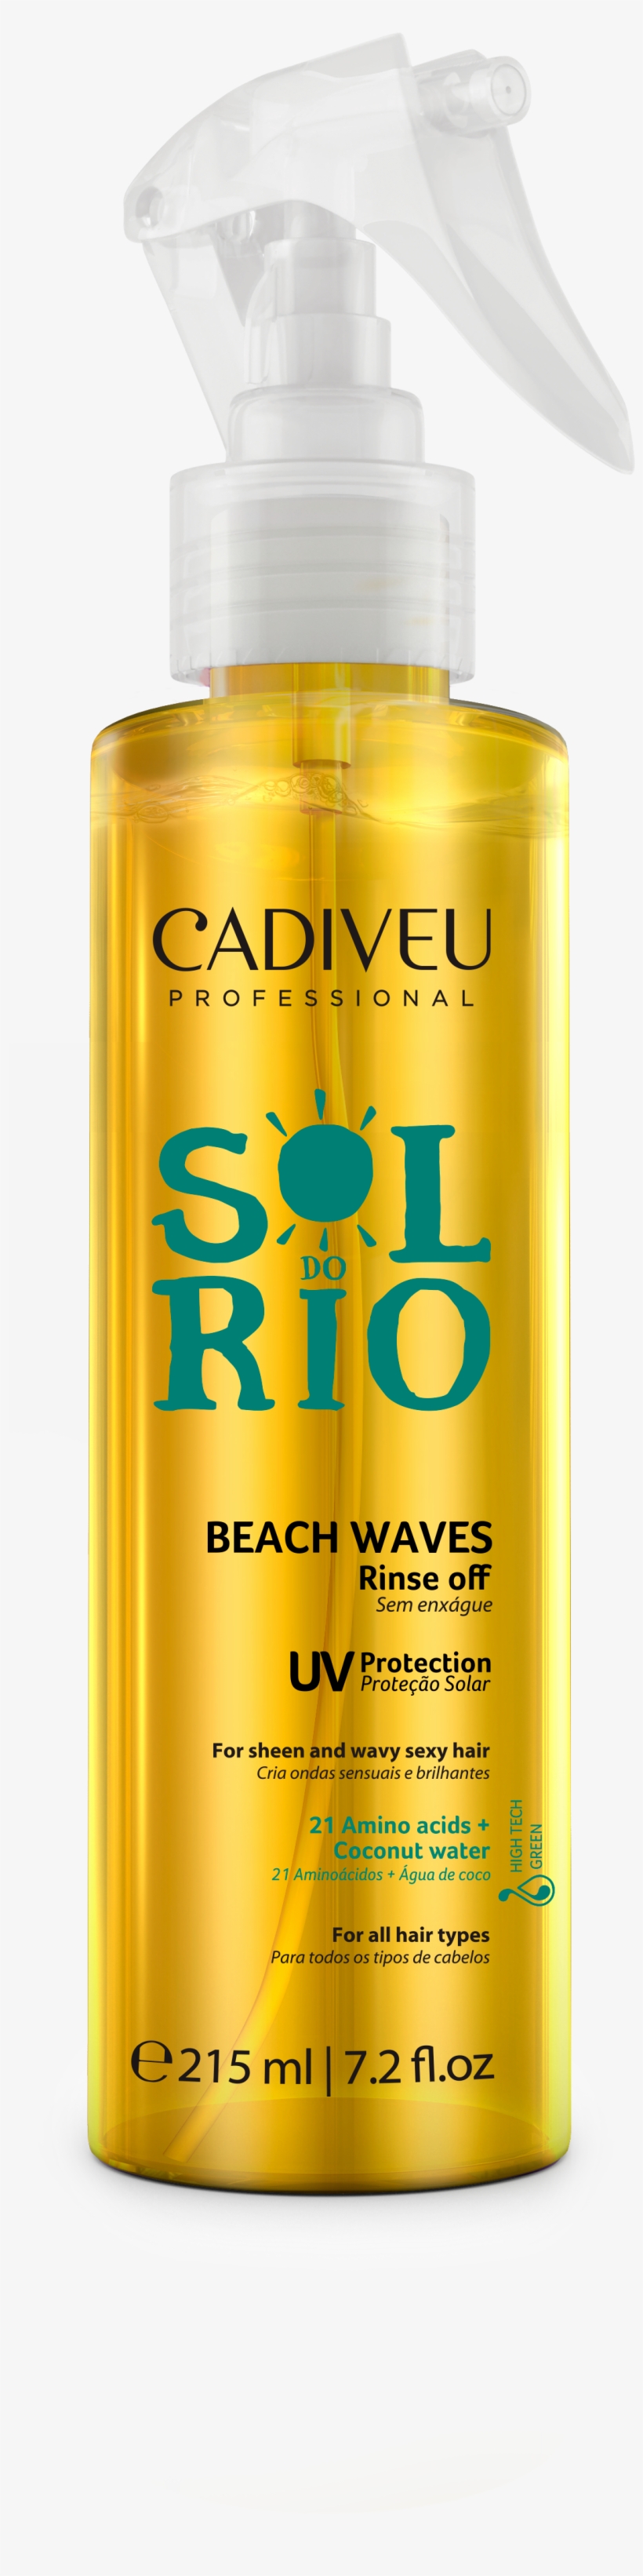 Beach Waves Spray - Sol Do Rio Cadiveu, transparent png #9492858